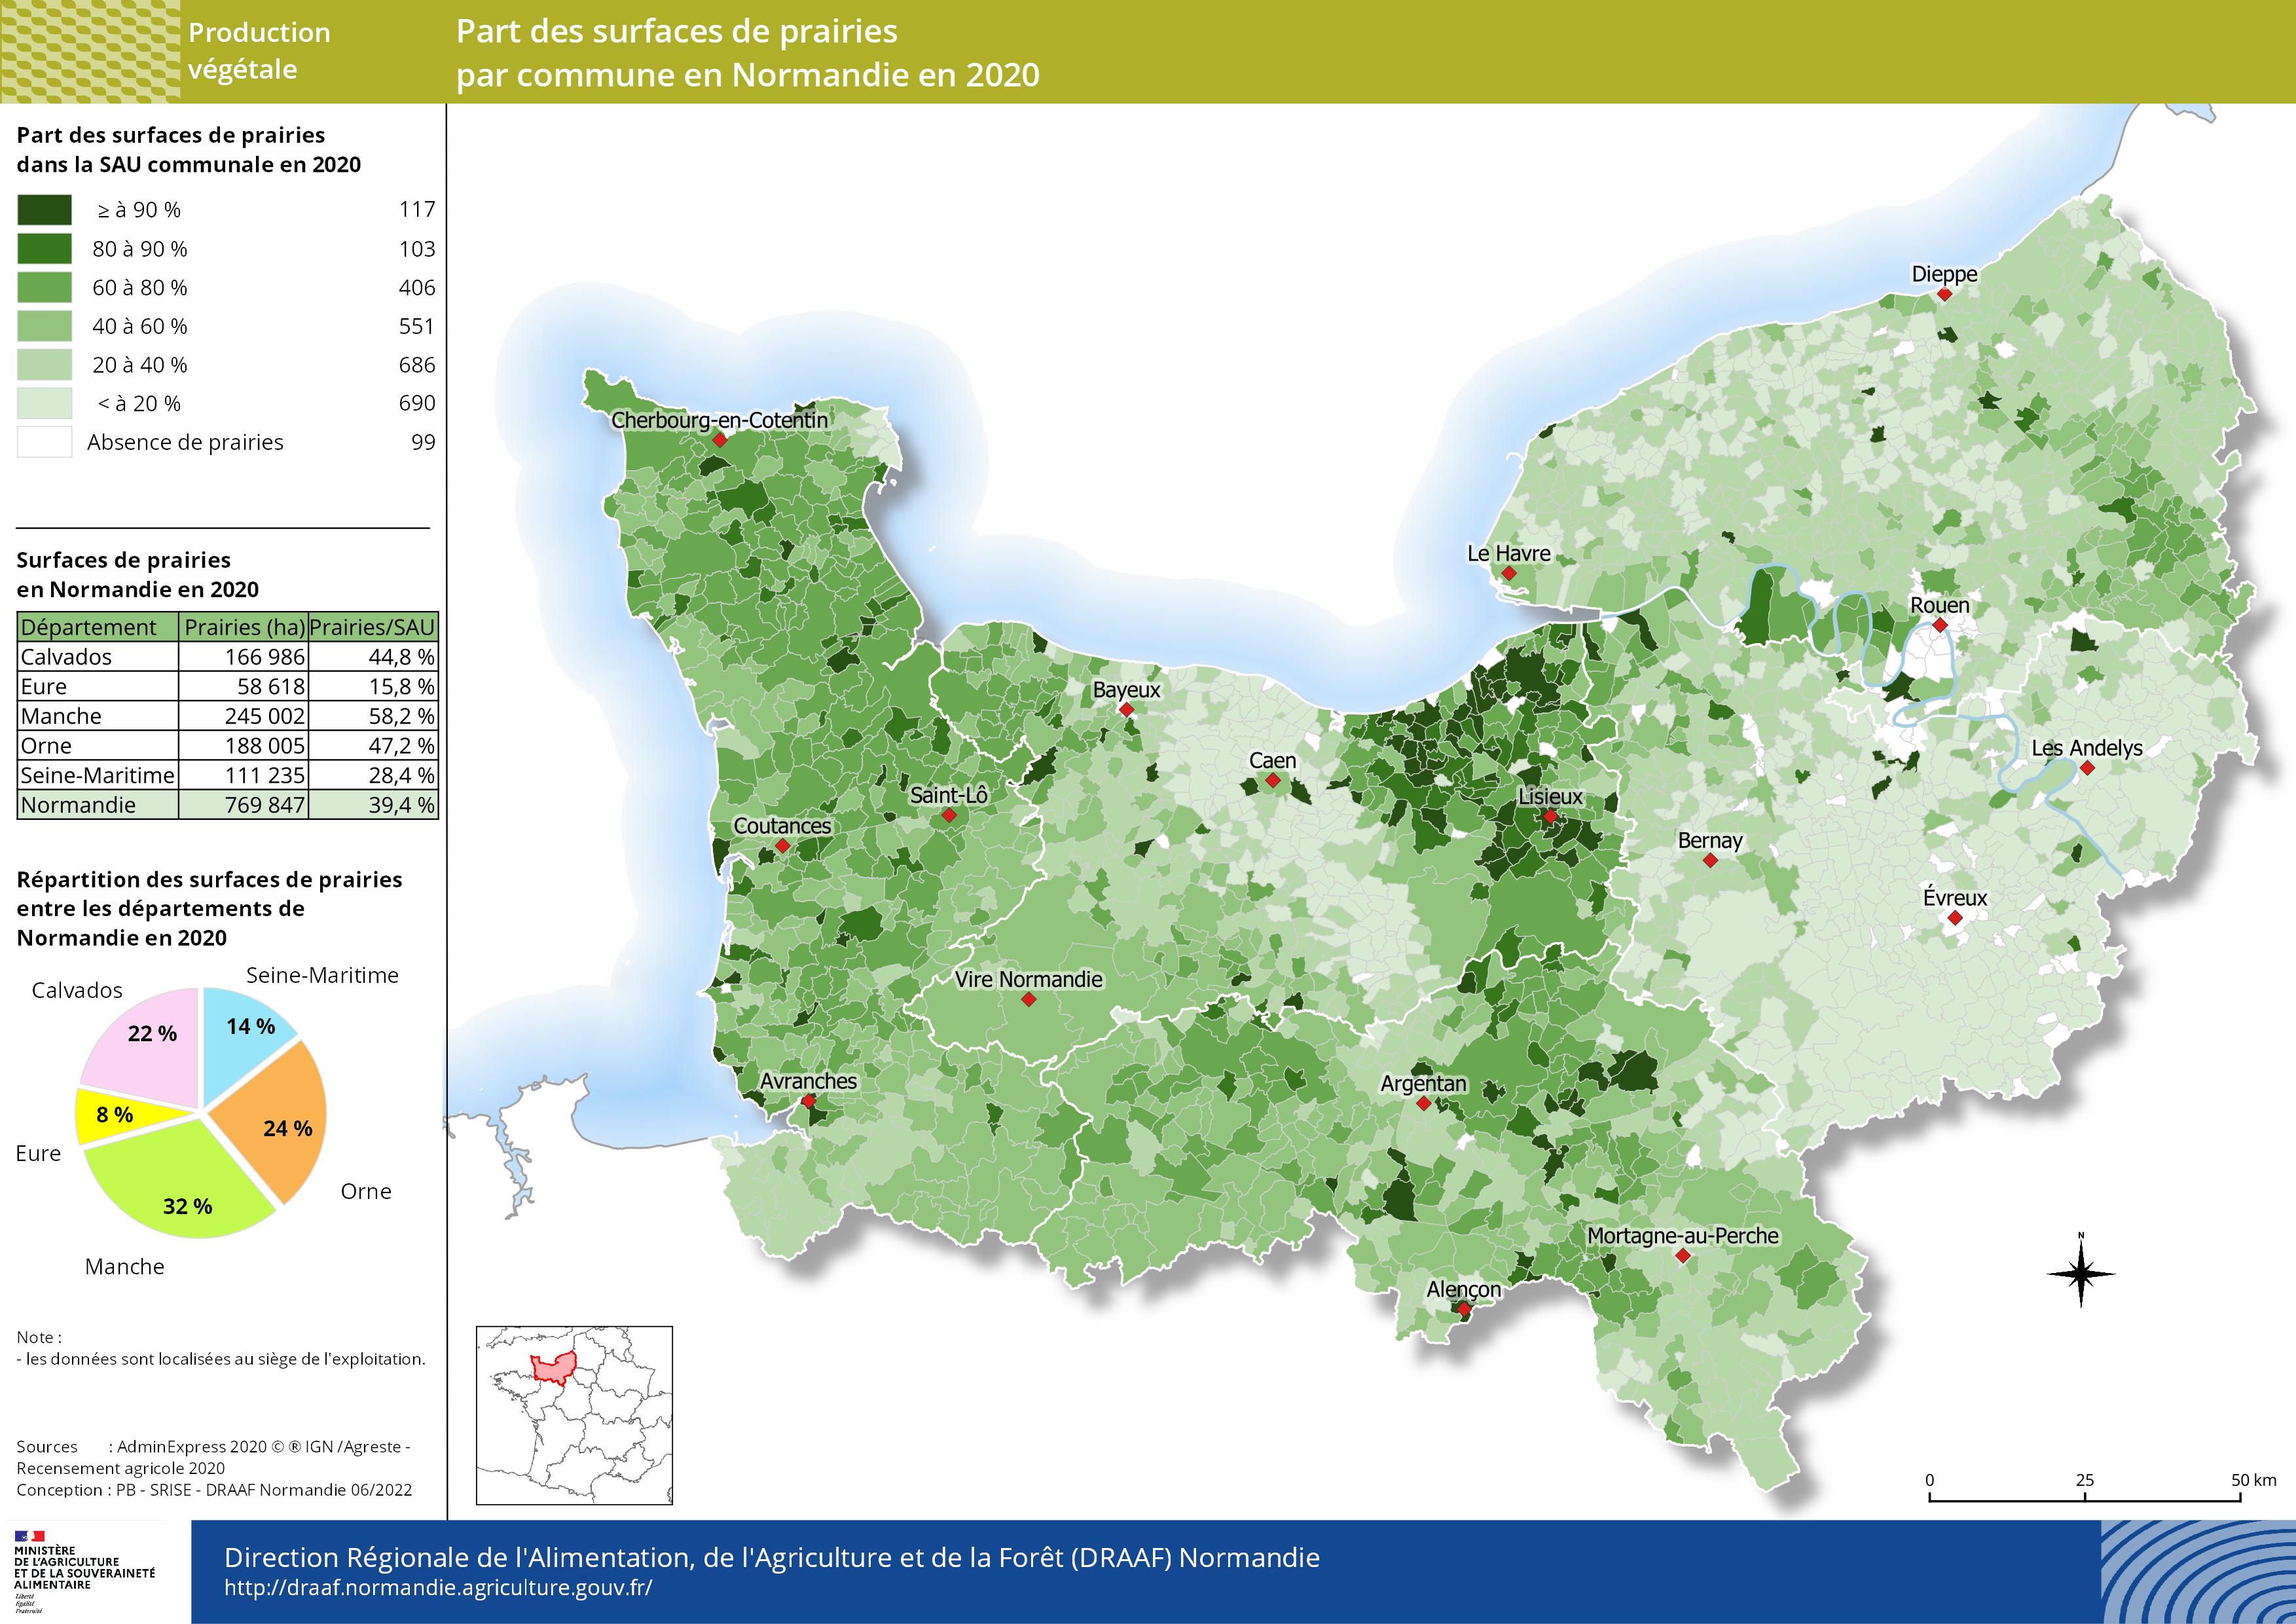 carte représentant la part des surfaces de prairies par commune en Normandie en 2020